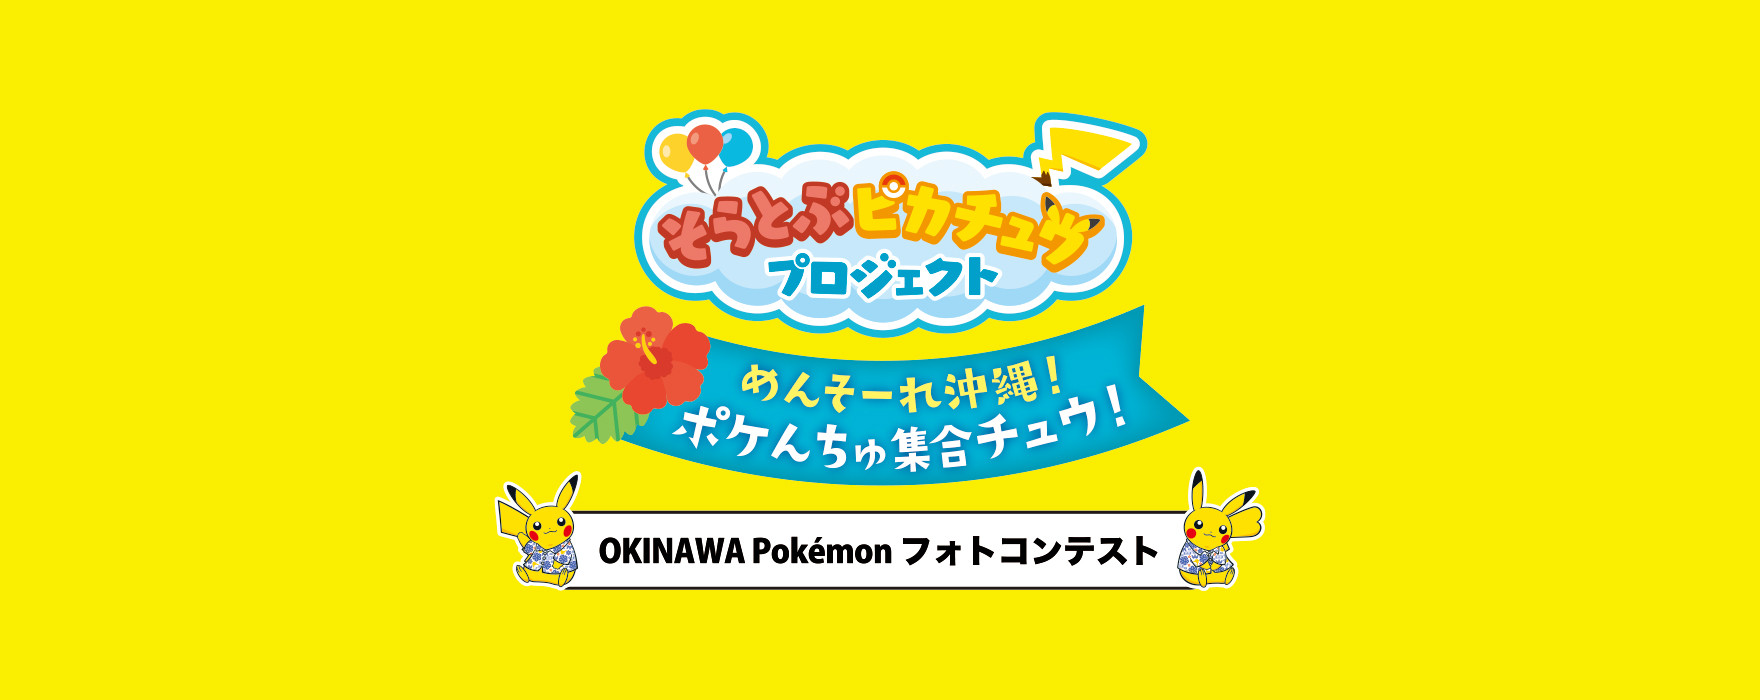 OKINAWA Pokemonフォトコンテスト